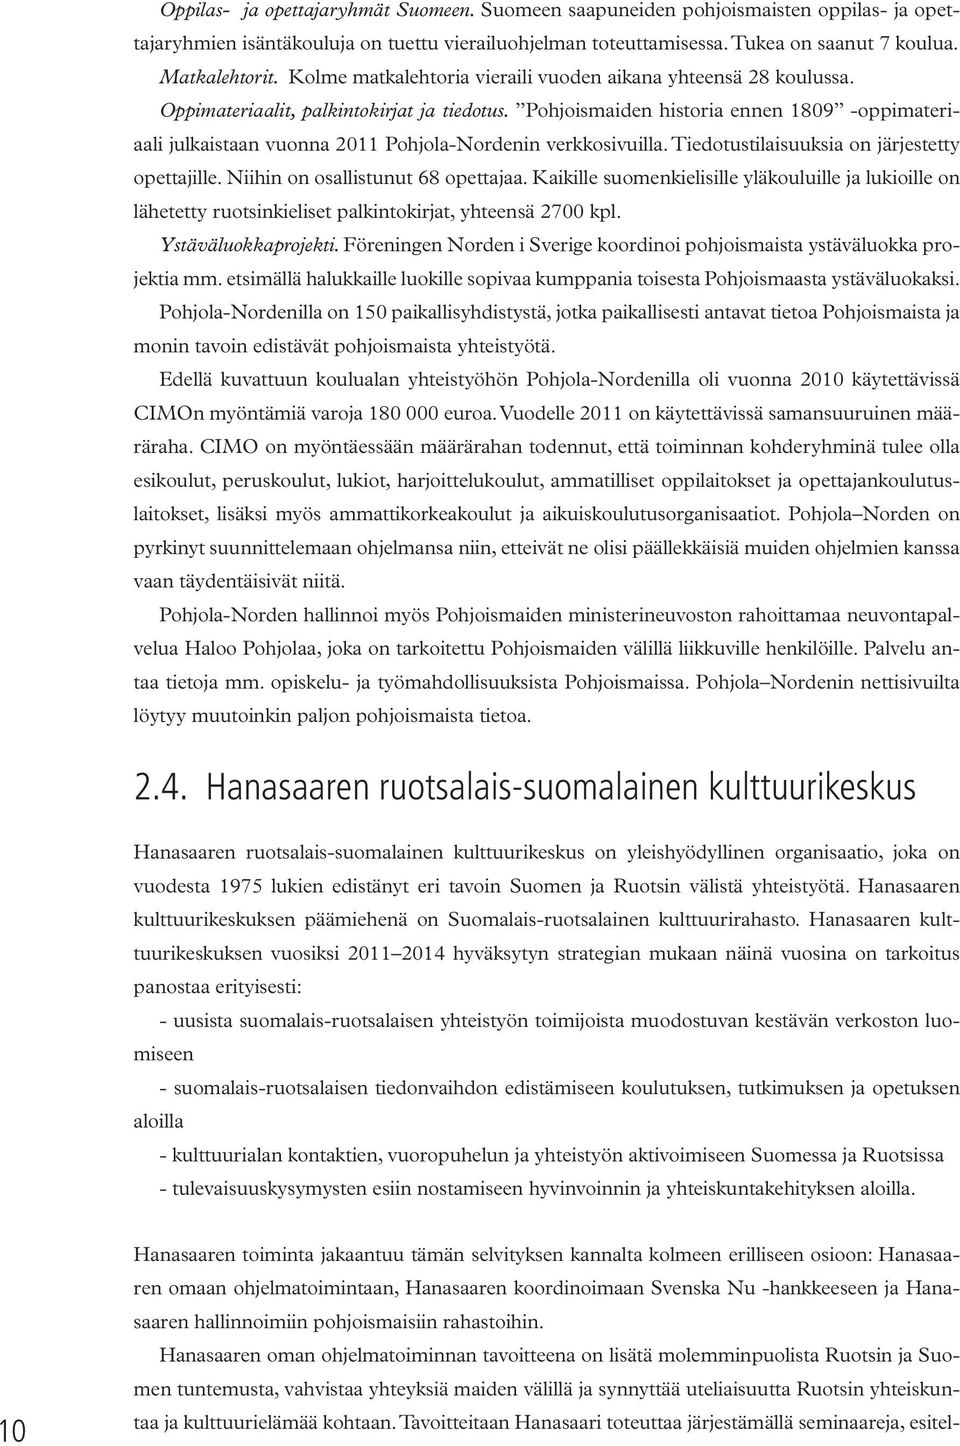 Pohjoismaiden historia ennen 1809 -oppimateriaali julkaistaan vuonna 2011 Pohjola-Nordenin verkkosivuilla. Tiedotustilaisuuksia on järjestetty opettajille. Niihin on osallistunut 68 opettajaa.